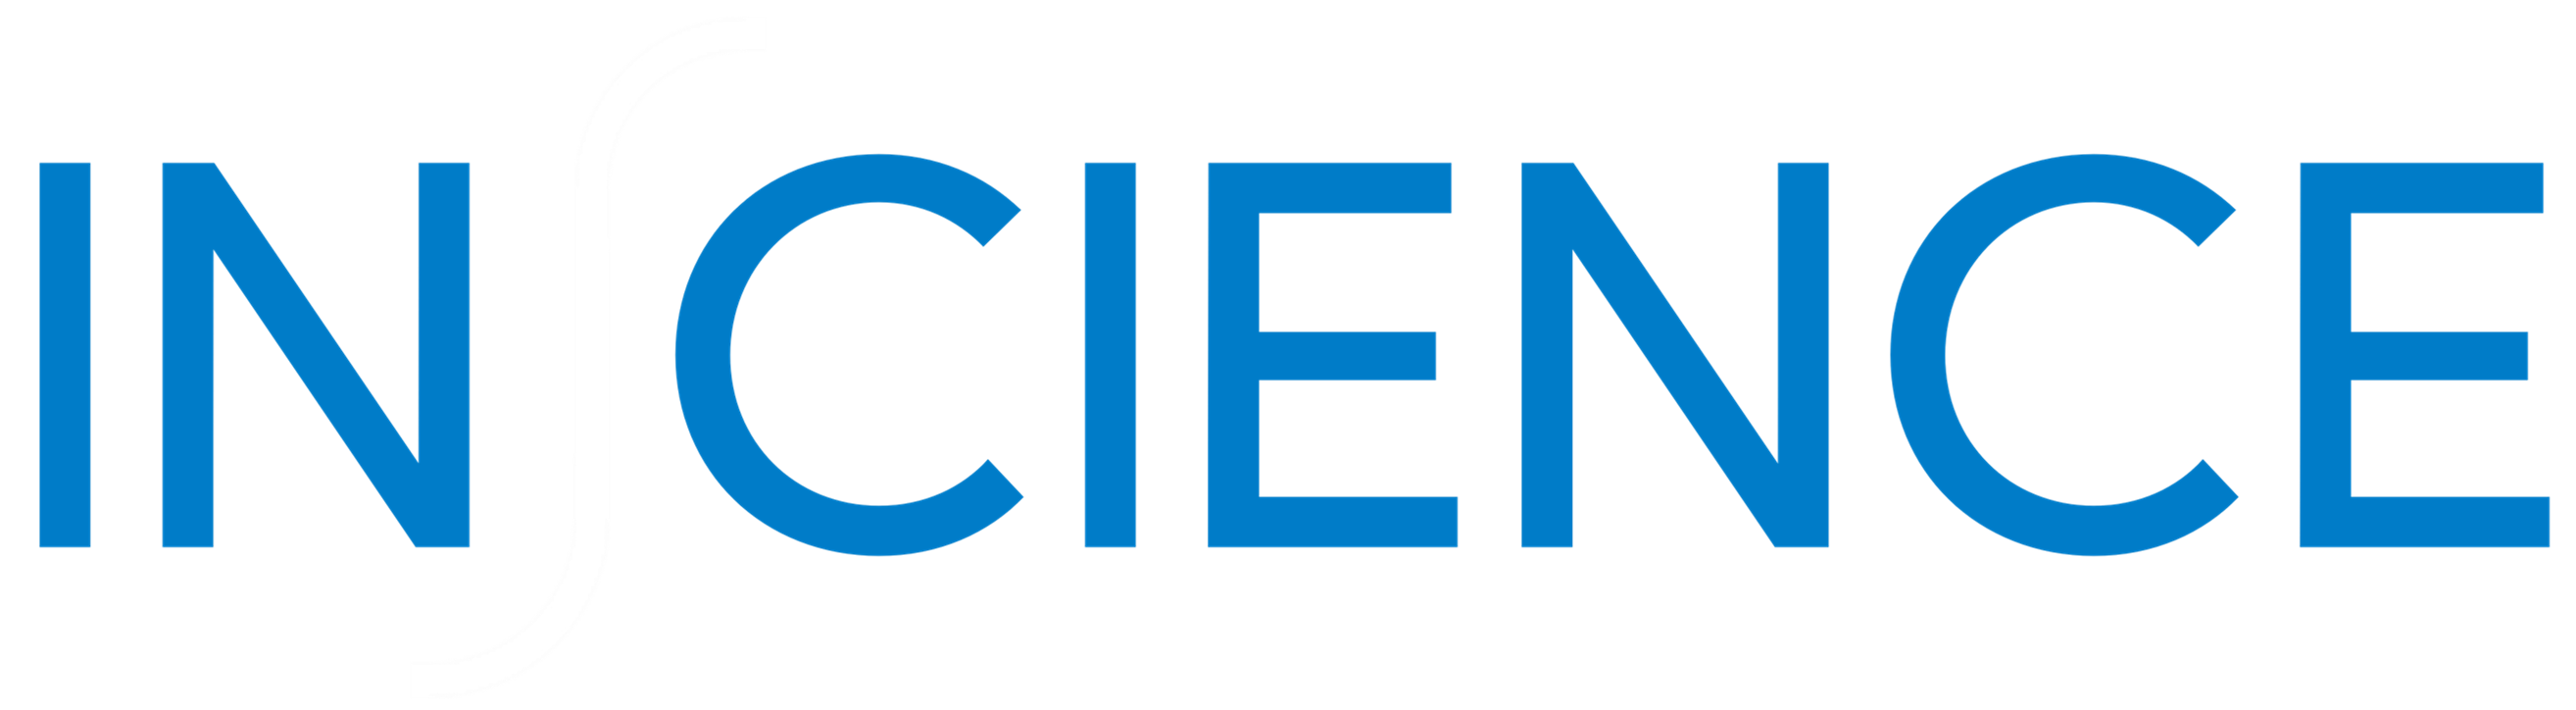 InScience logo